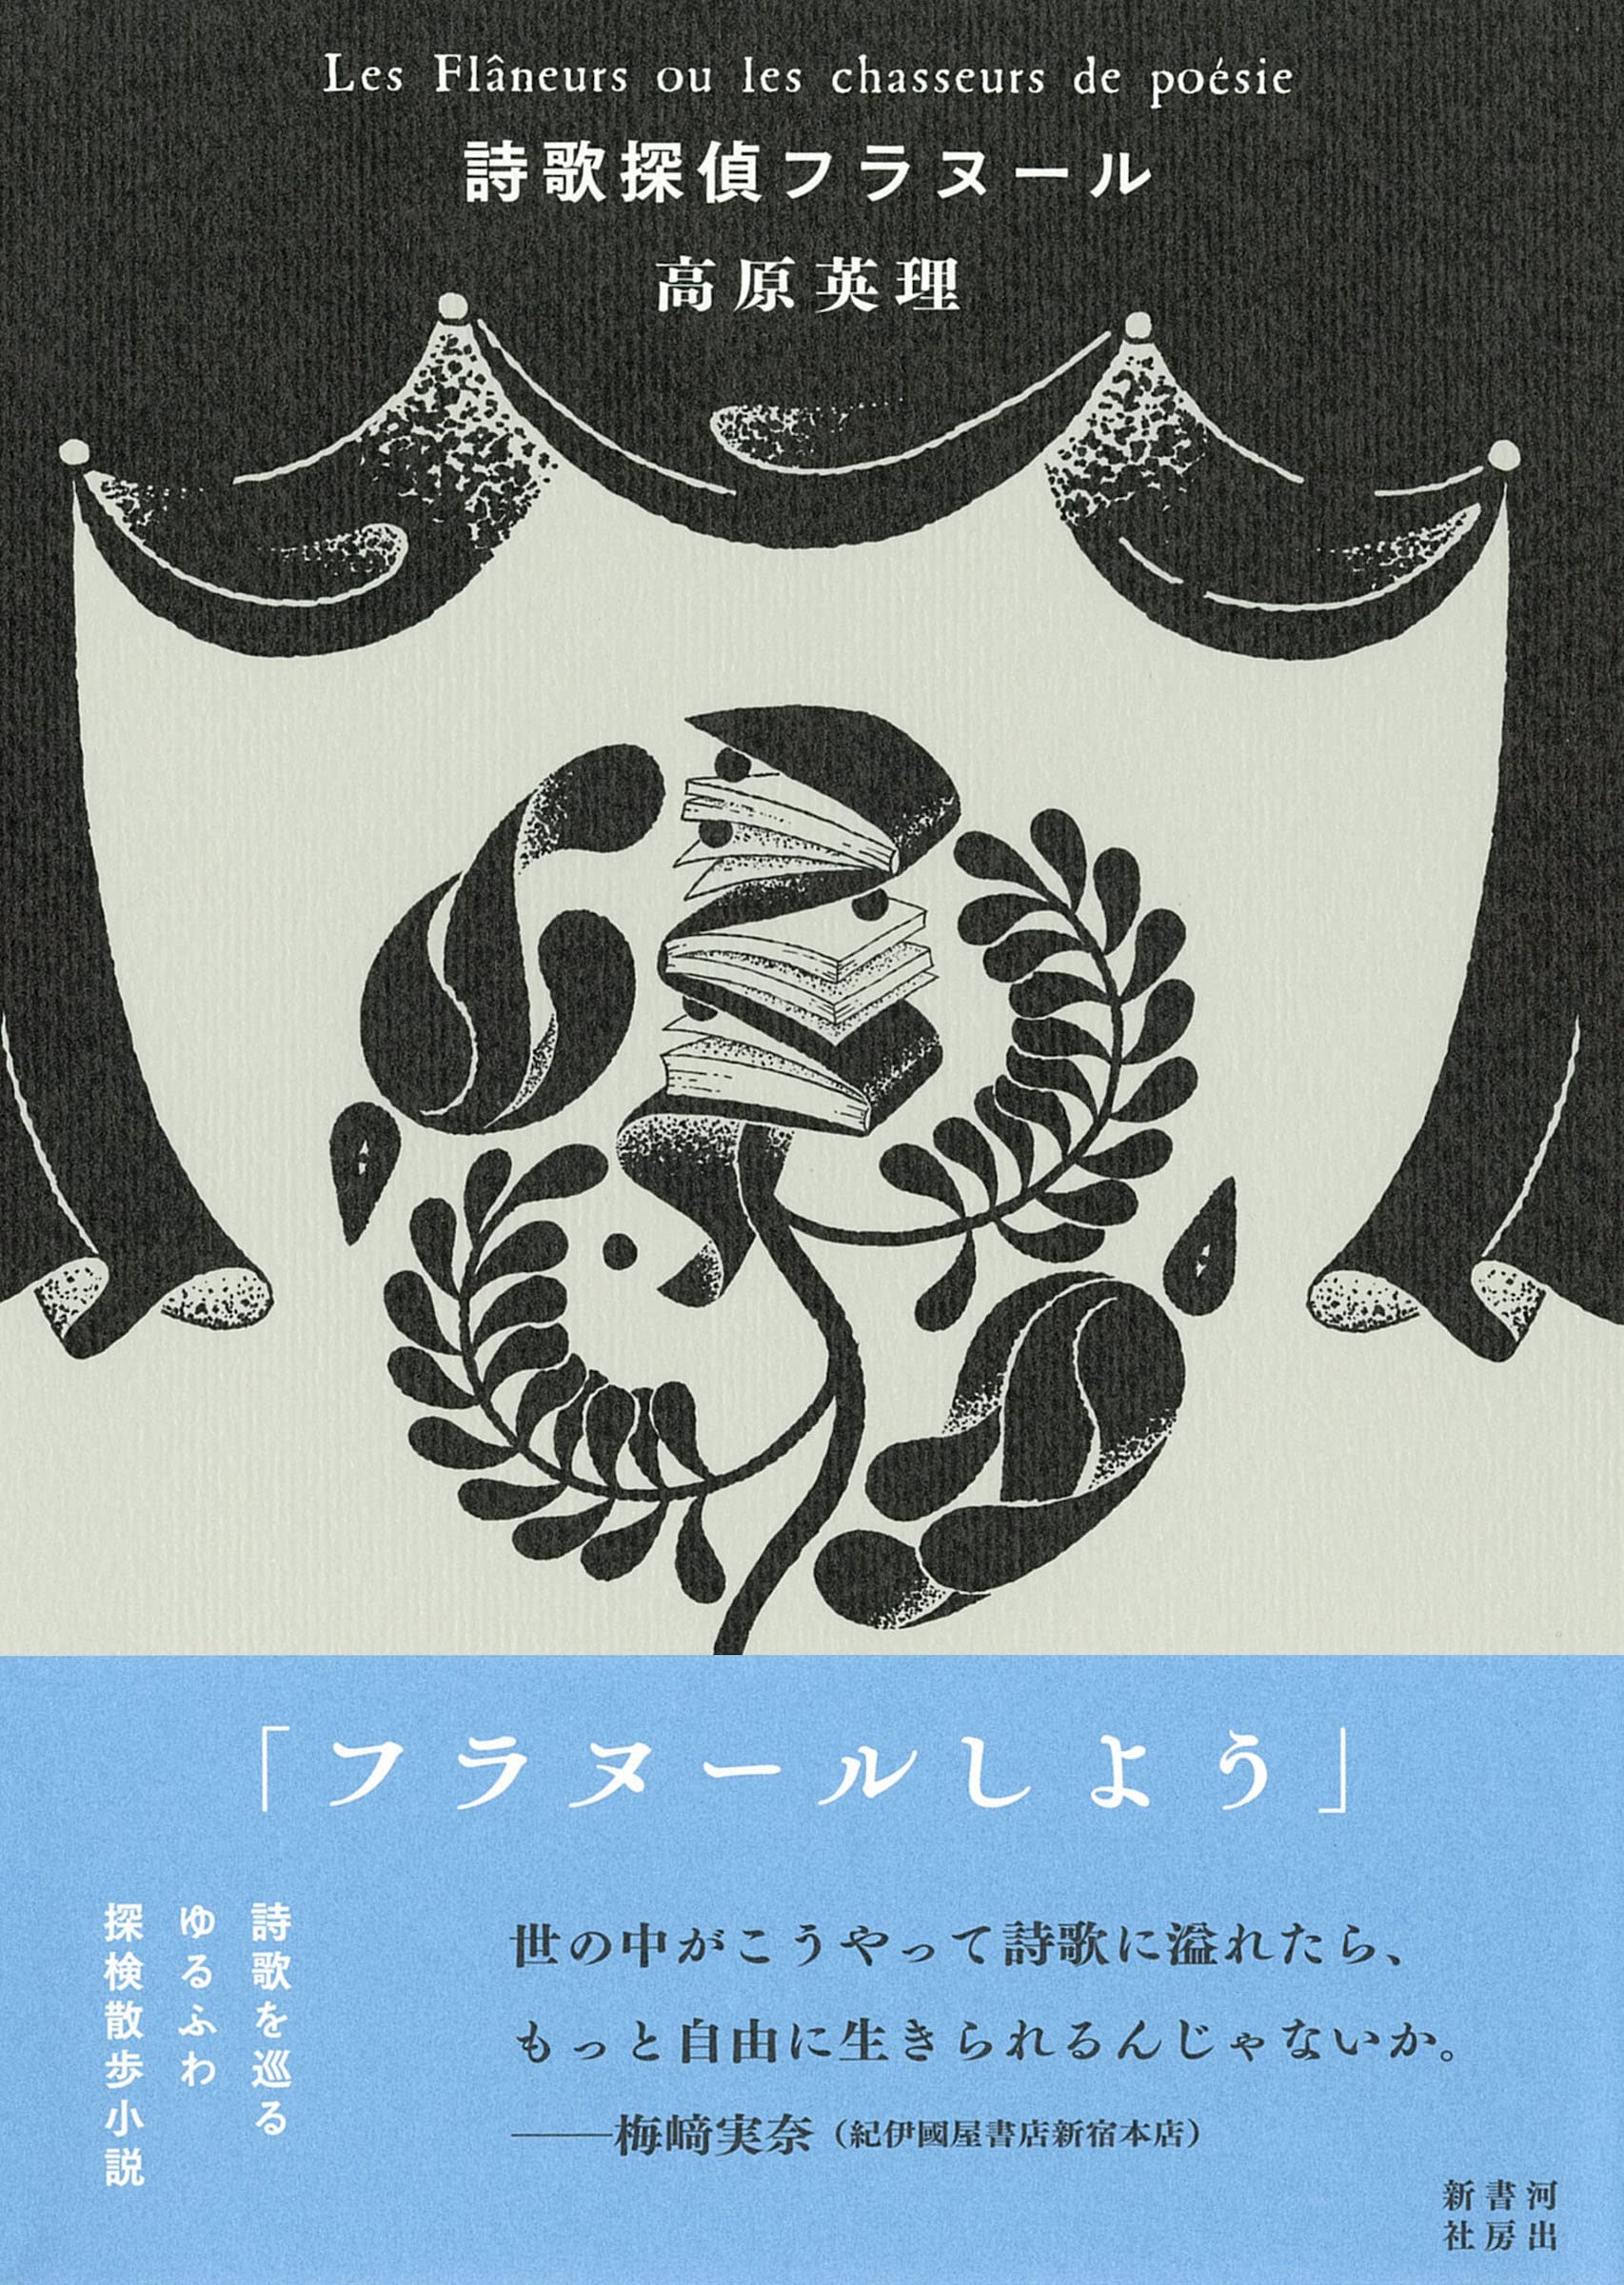 モモンガハウス(猫・音楽)ドット紫 春(夏)秋仕様 1900円 - 小動物用品